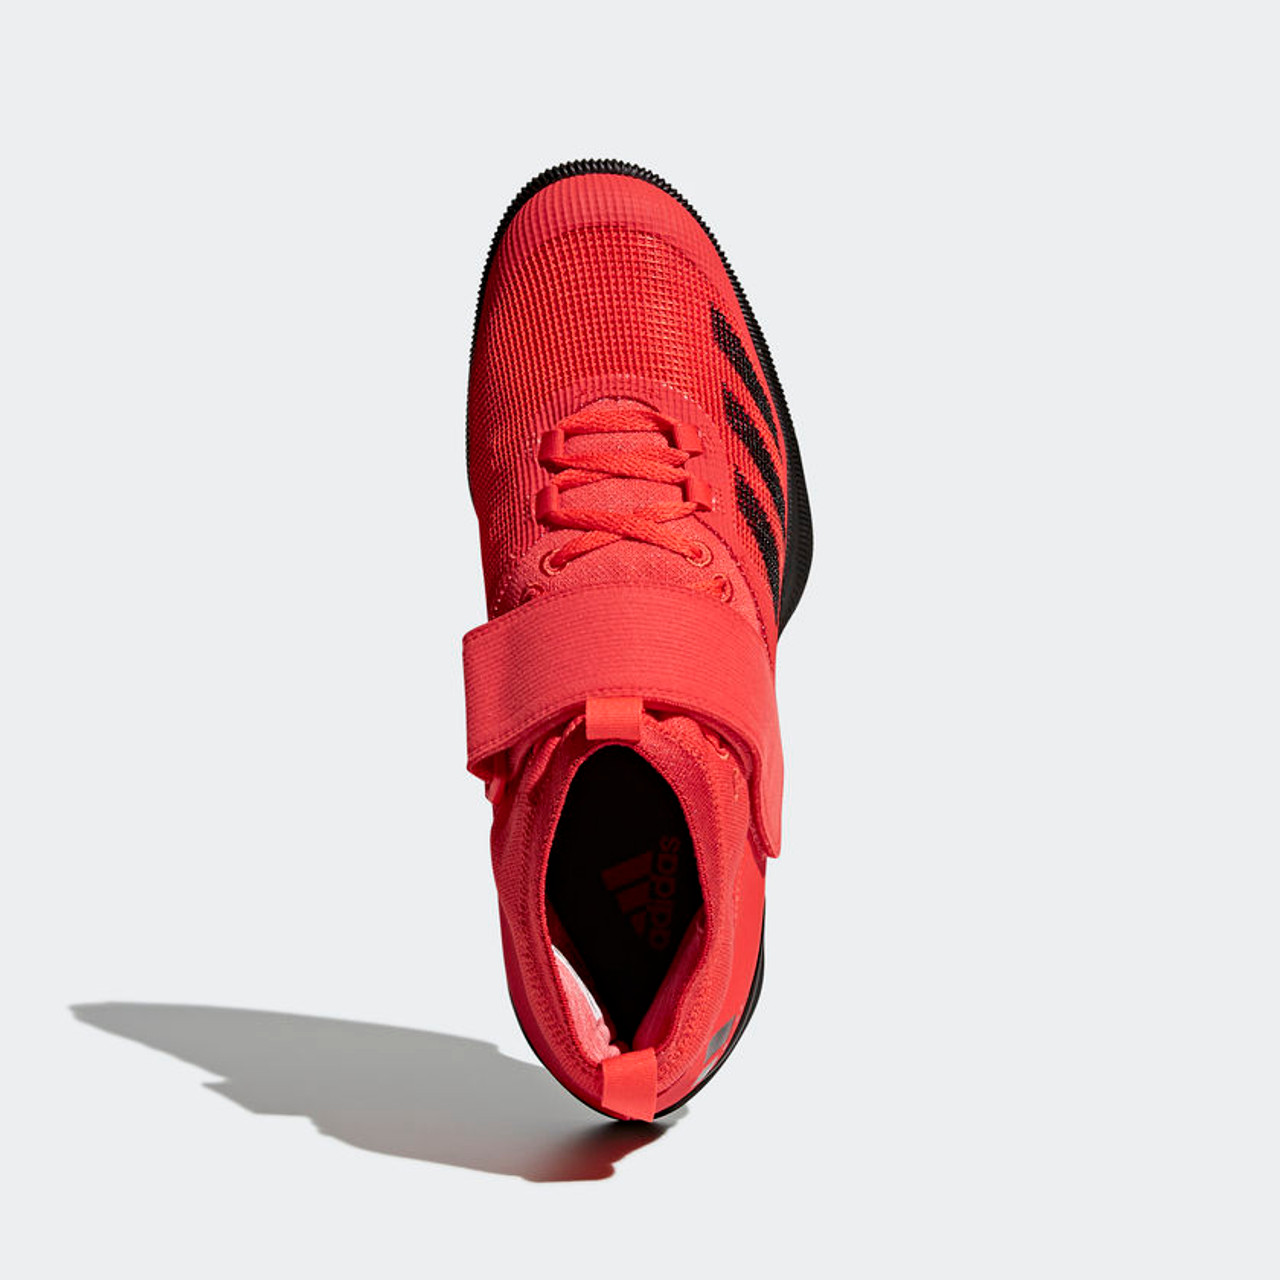 adidas crazy power rk shoes